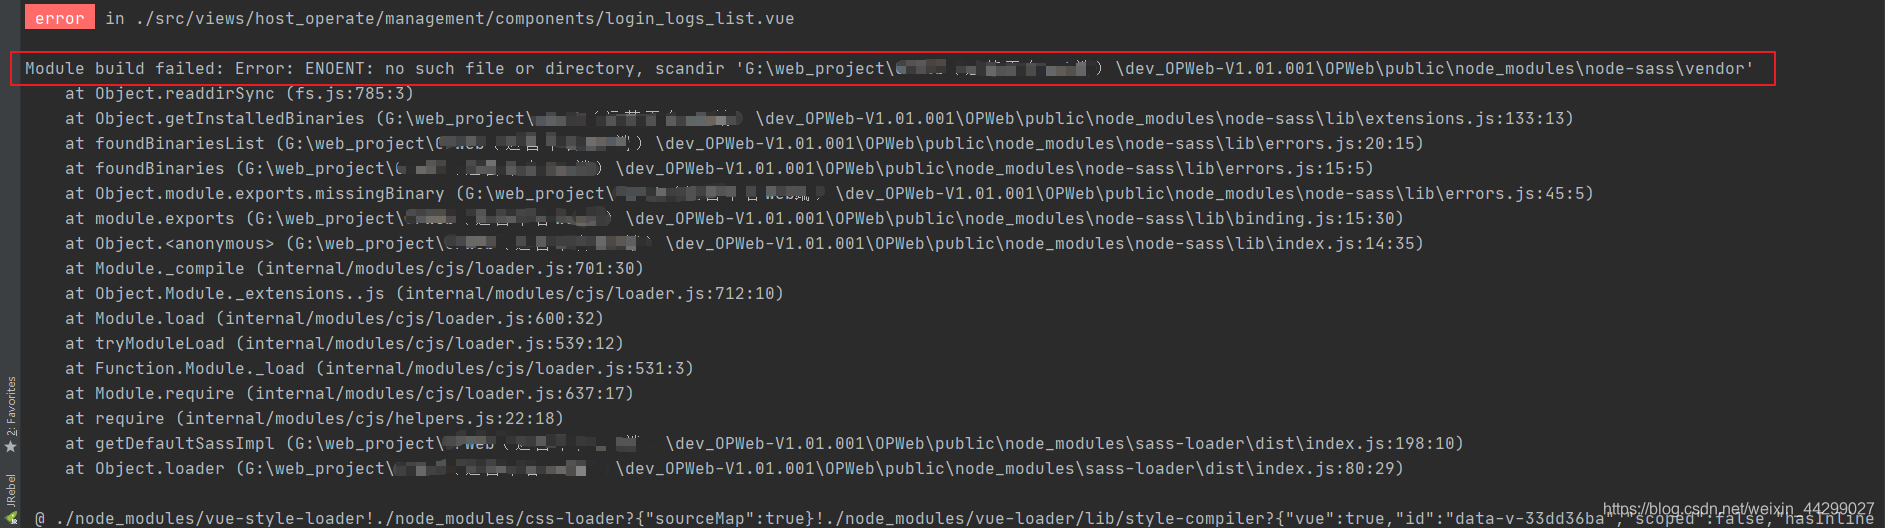 【前端异常】Module build failed: Error: ENOENT: no such file or directory, scandir ‘G:\OPWeb\public\node_m